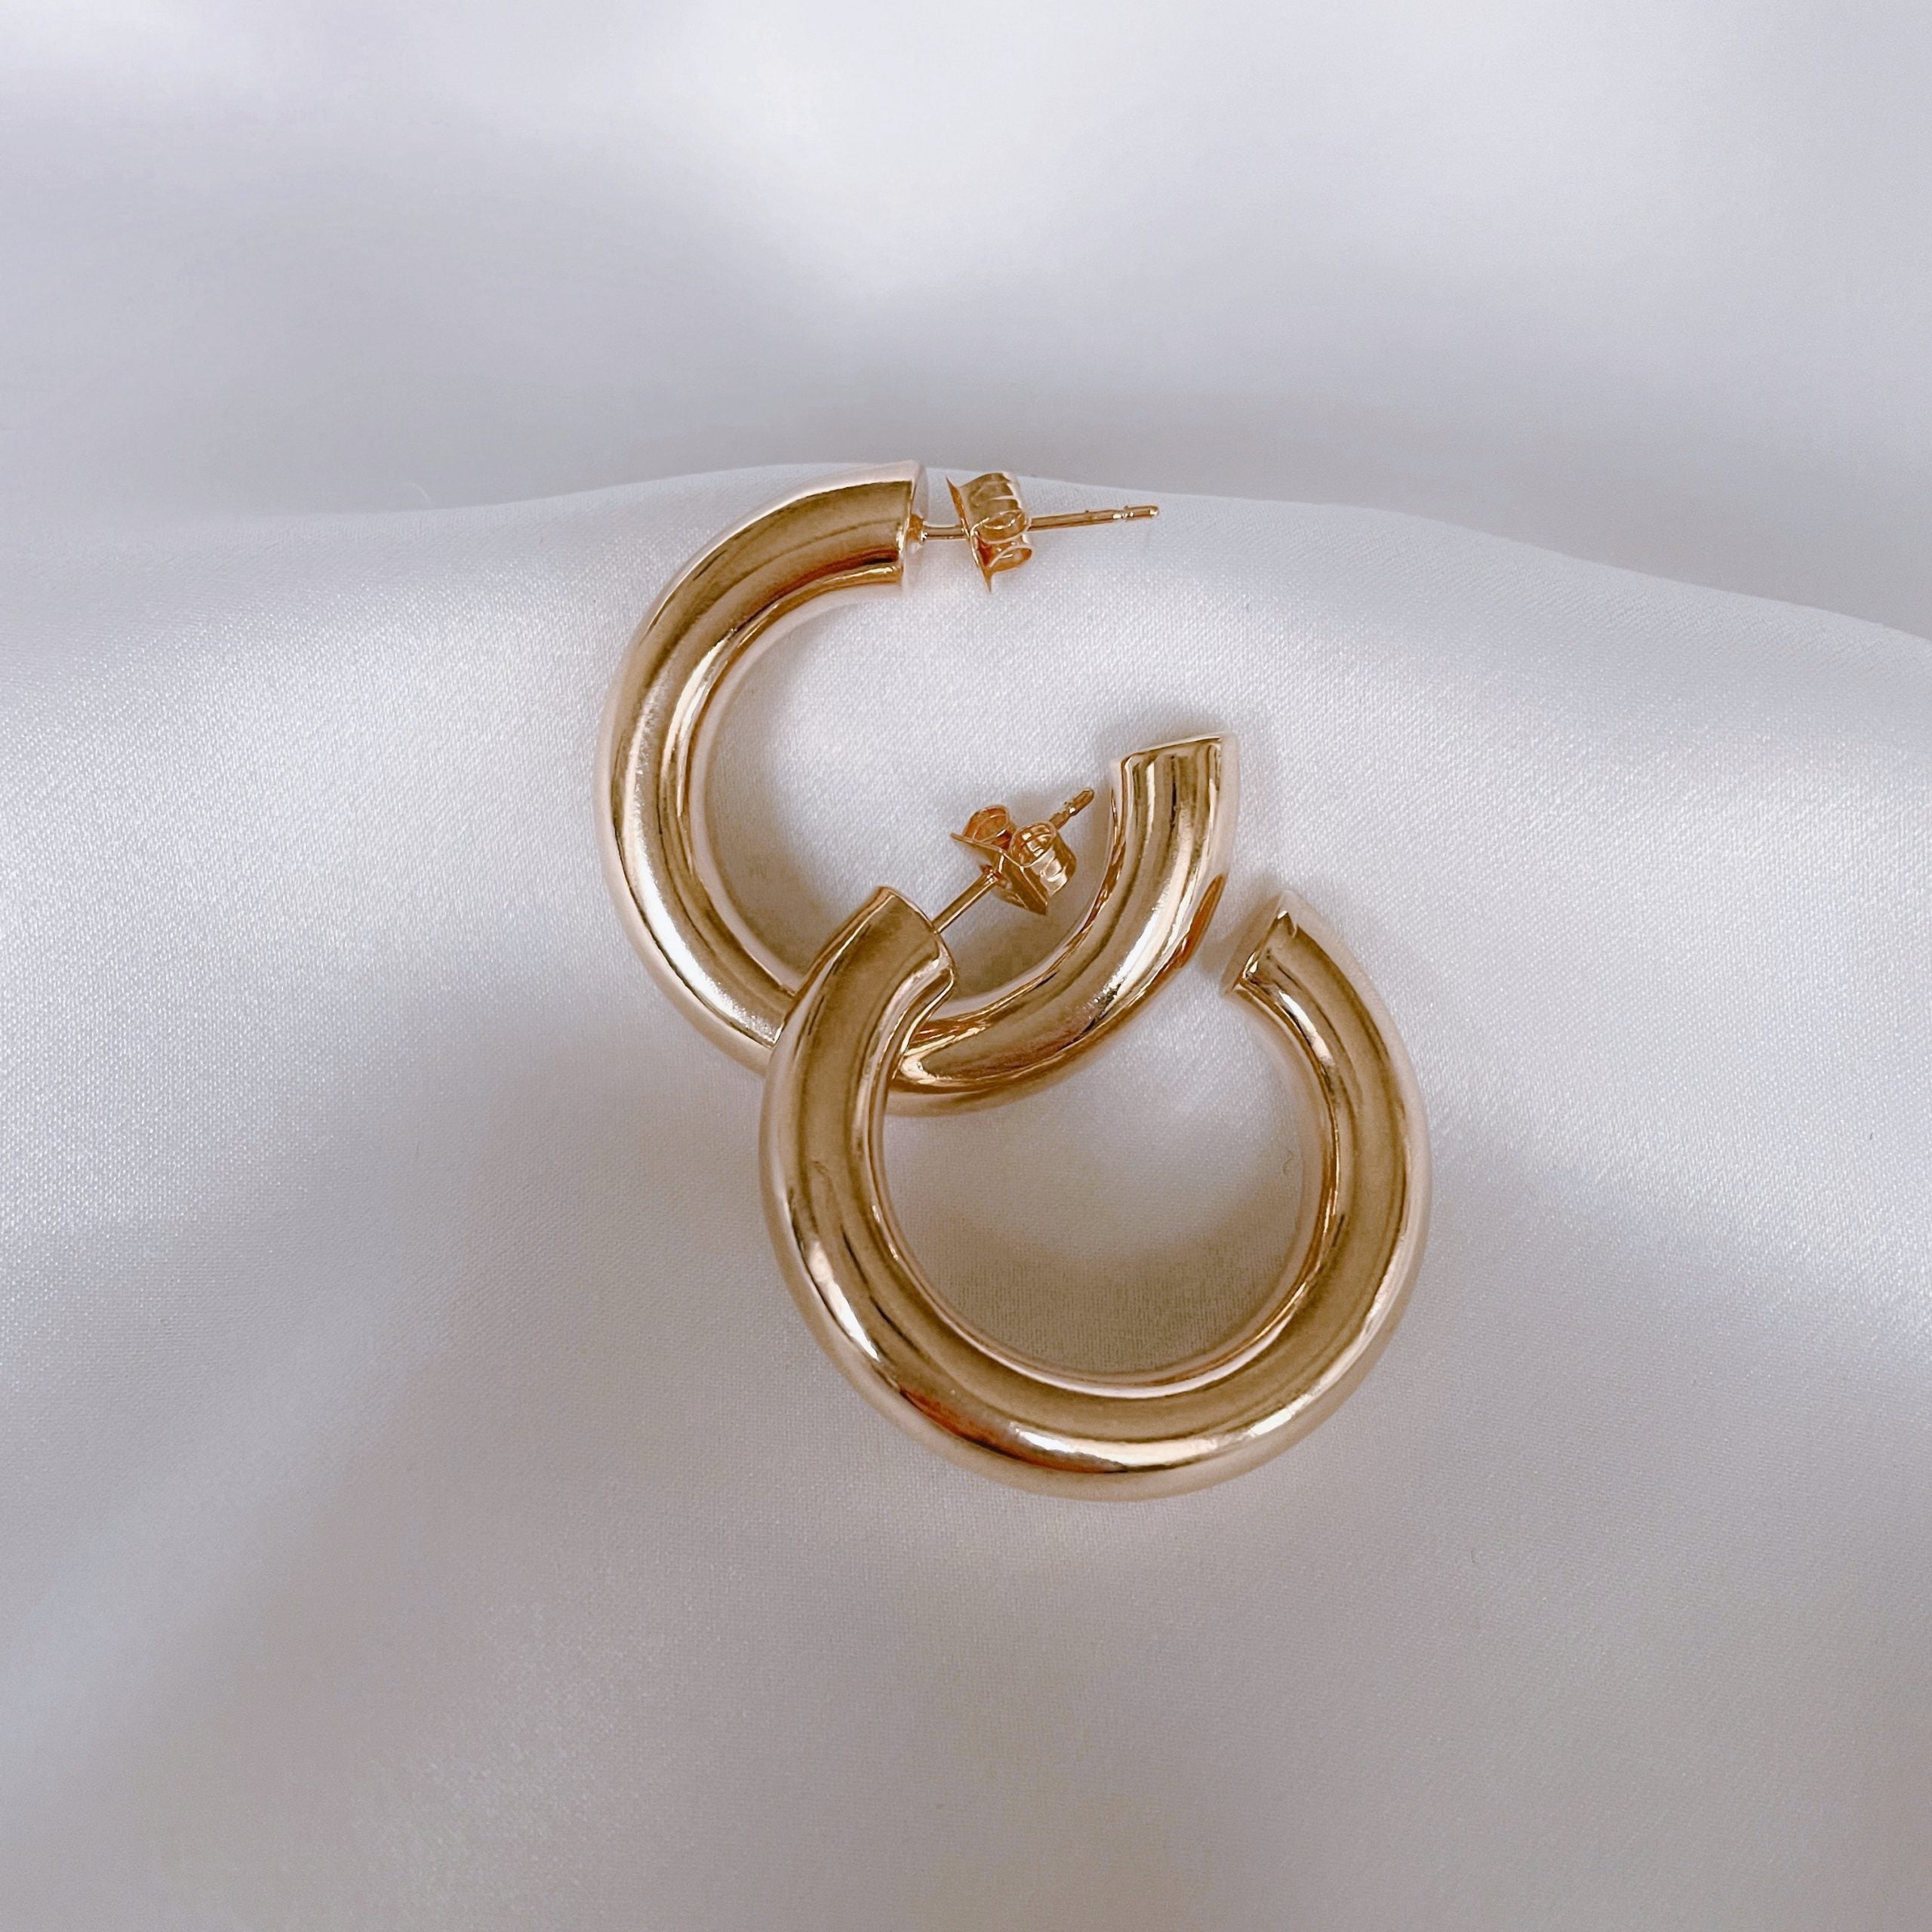 Gold-plated “Chiara” hoop earrings